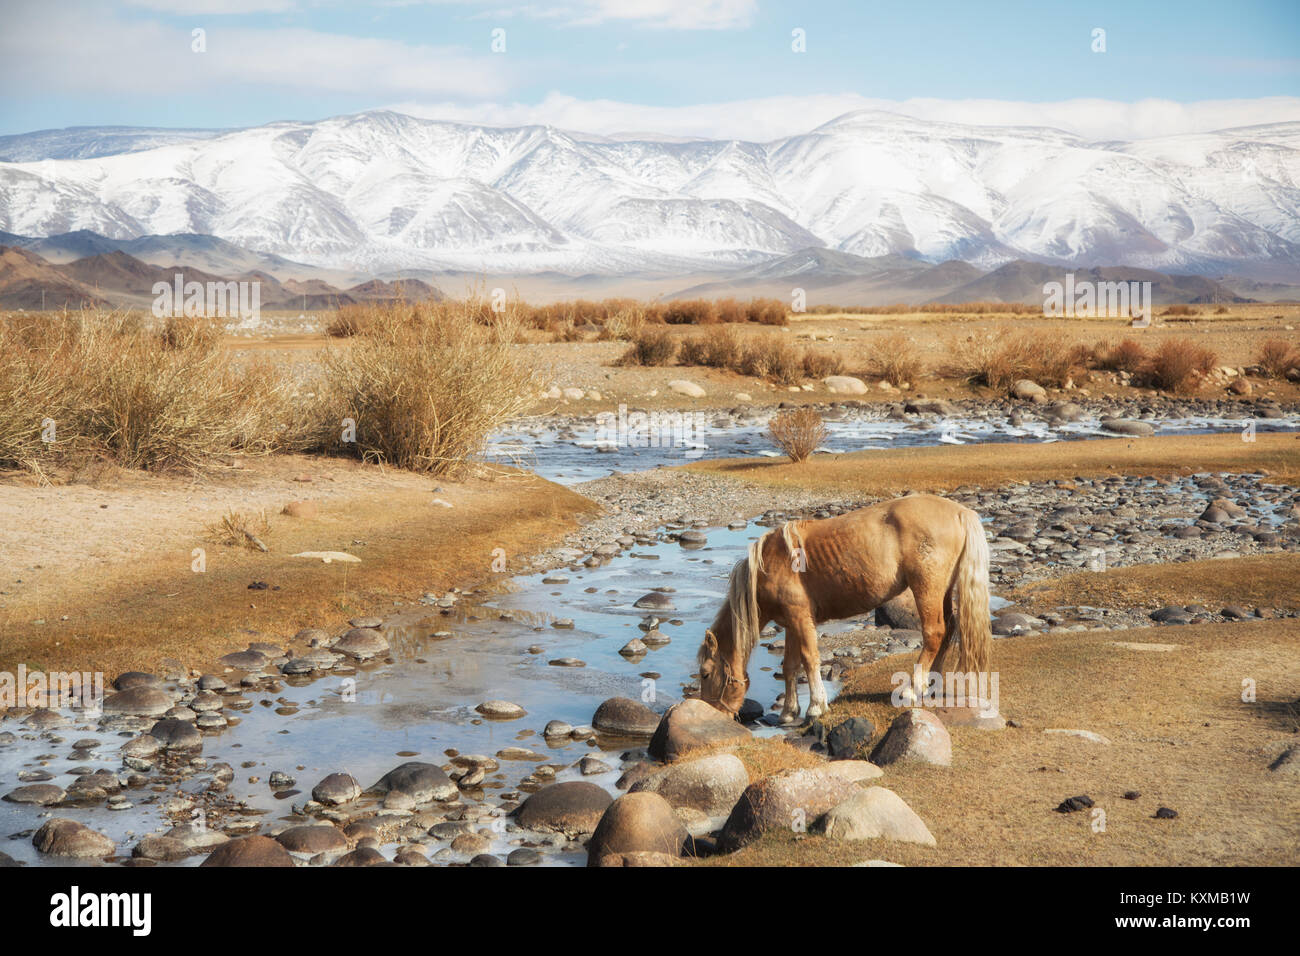 Il mongolo bionda cavallo di bere dal fiume Mongolia steppe praterie verdeggianti montagne innevate inverno Foto Stock